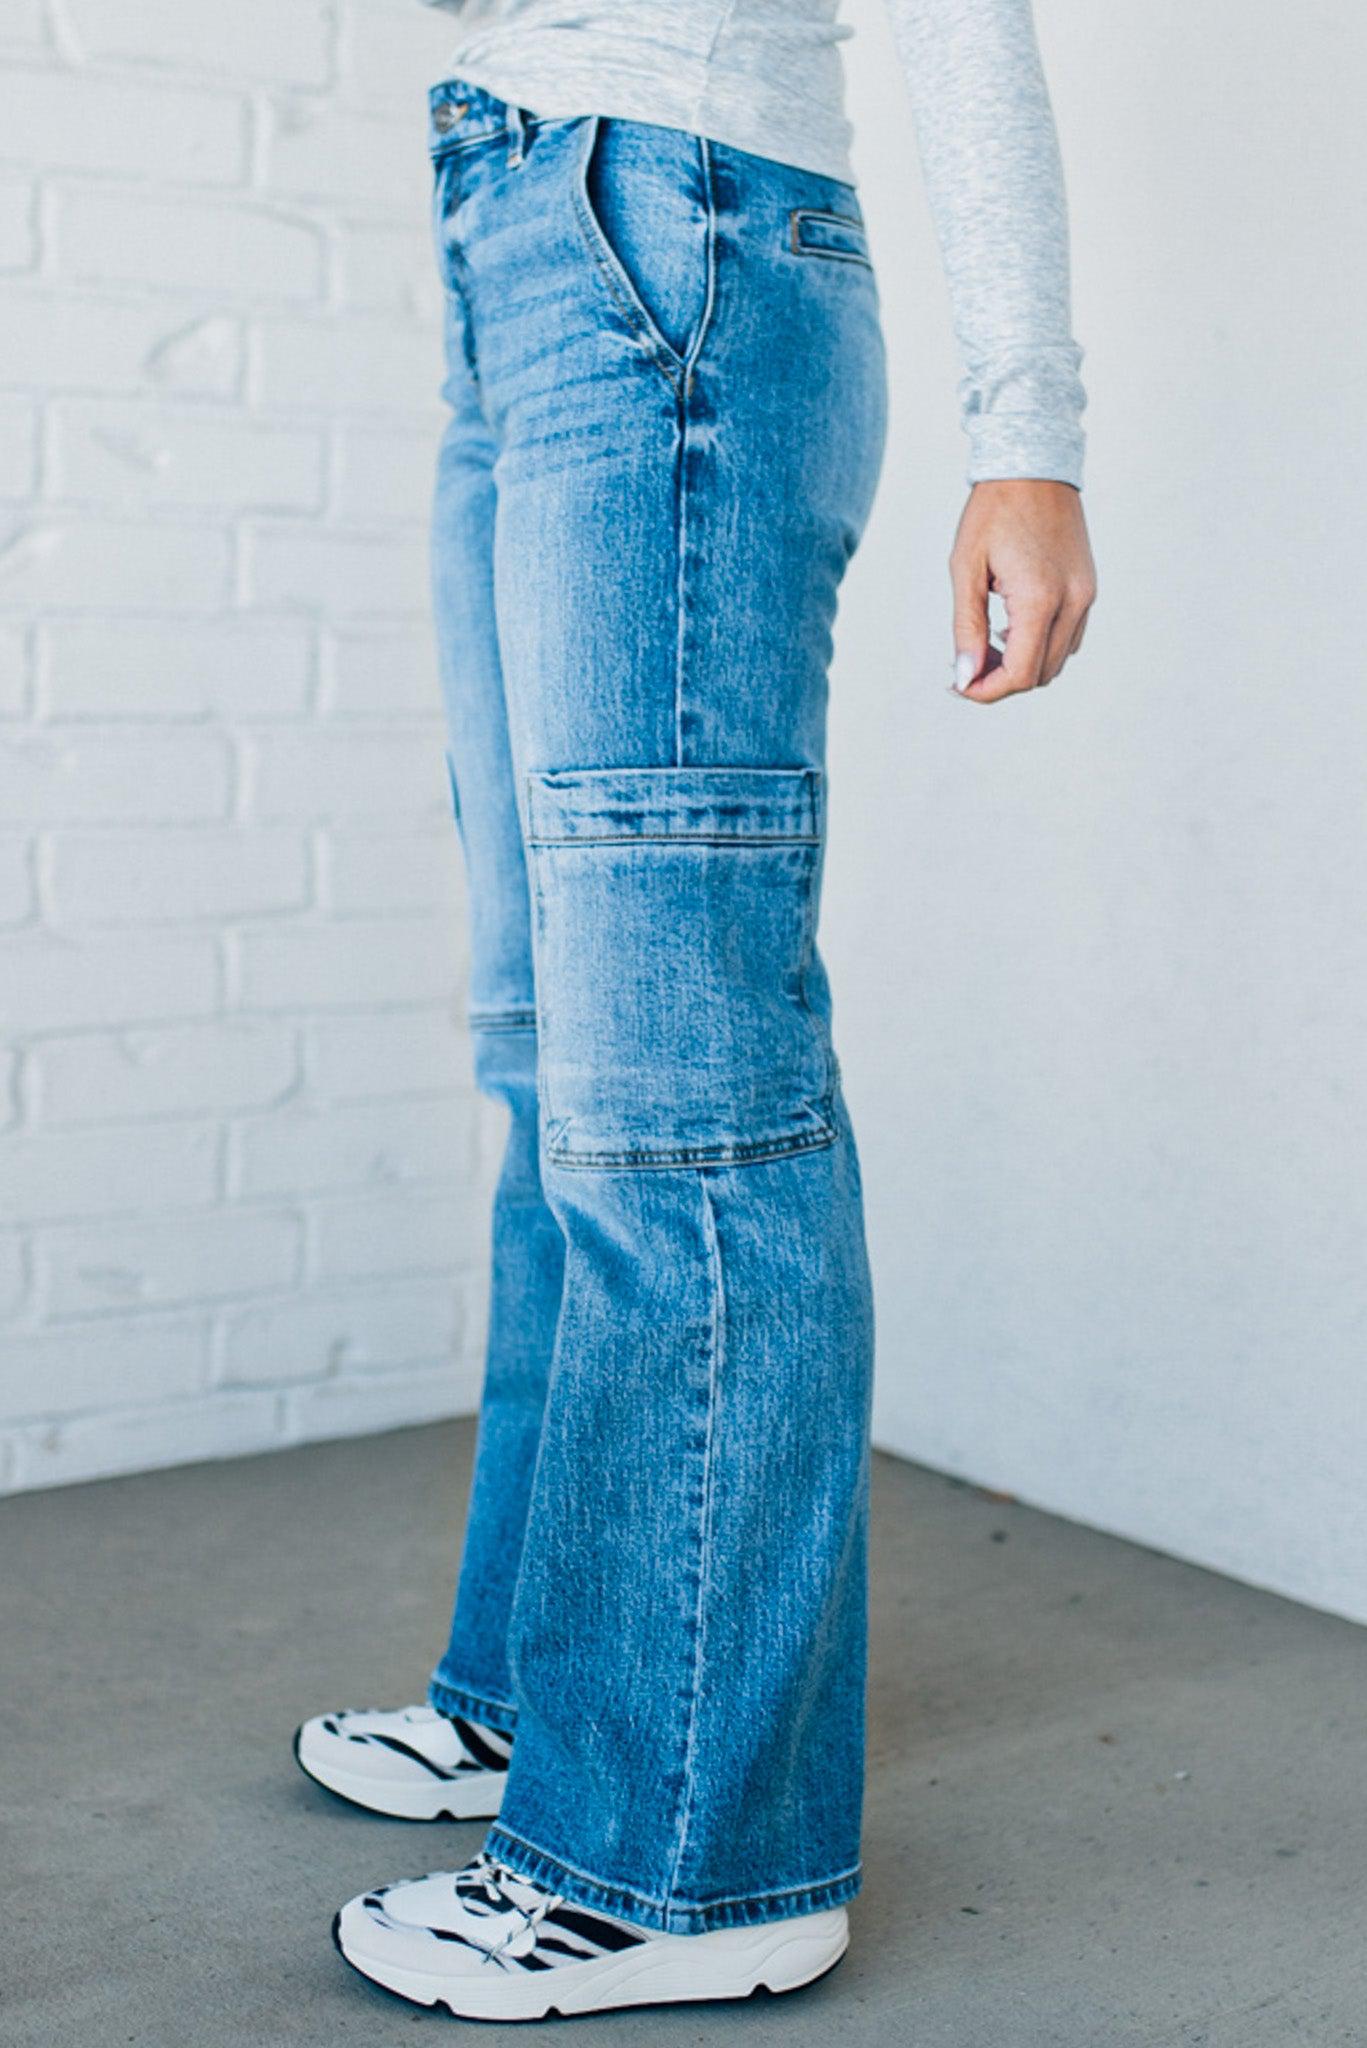 Ivy Wide Leg Cargo Pants – RubyClaire Boutique